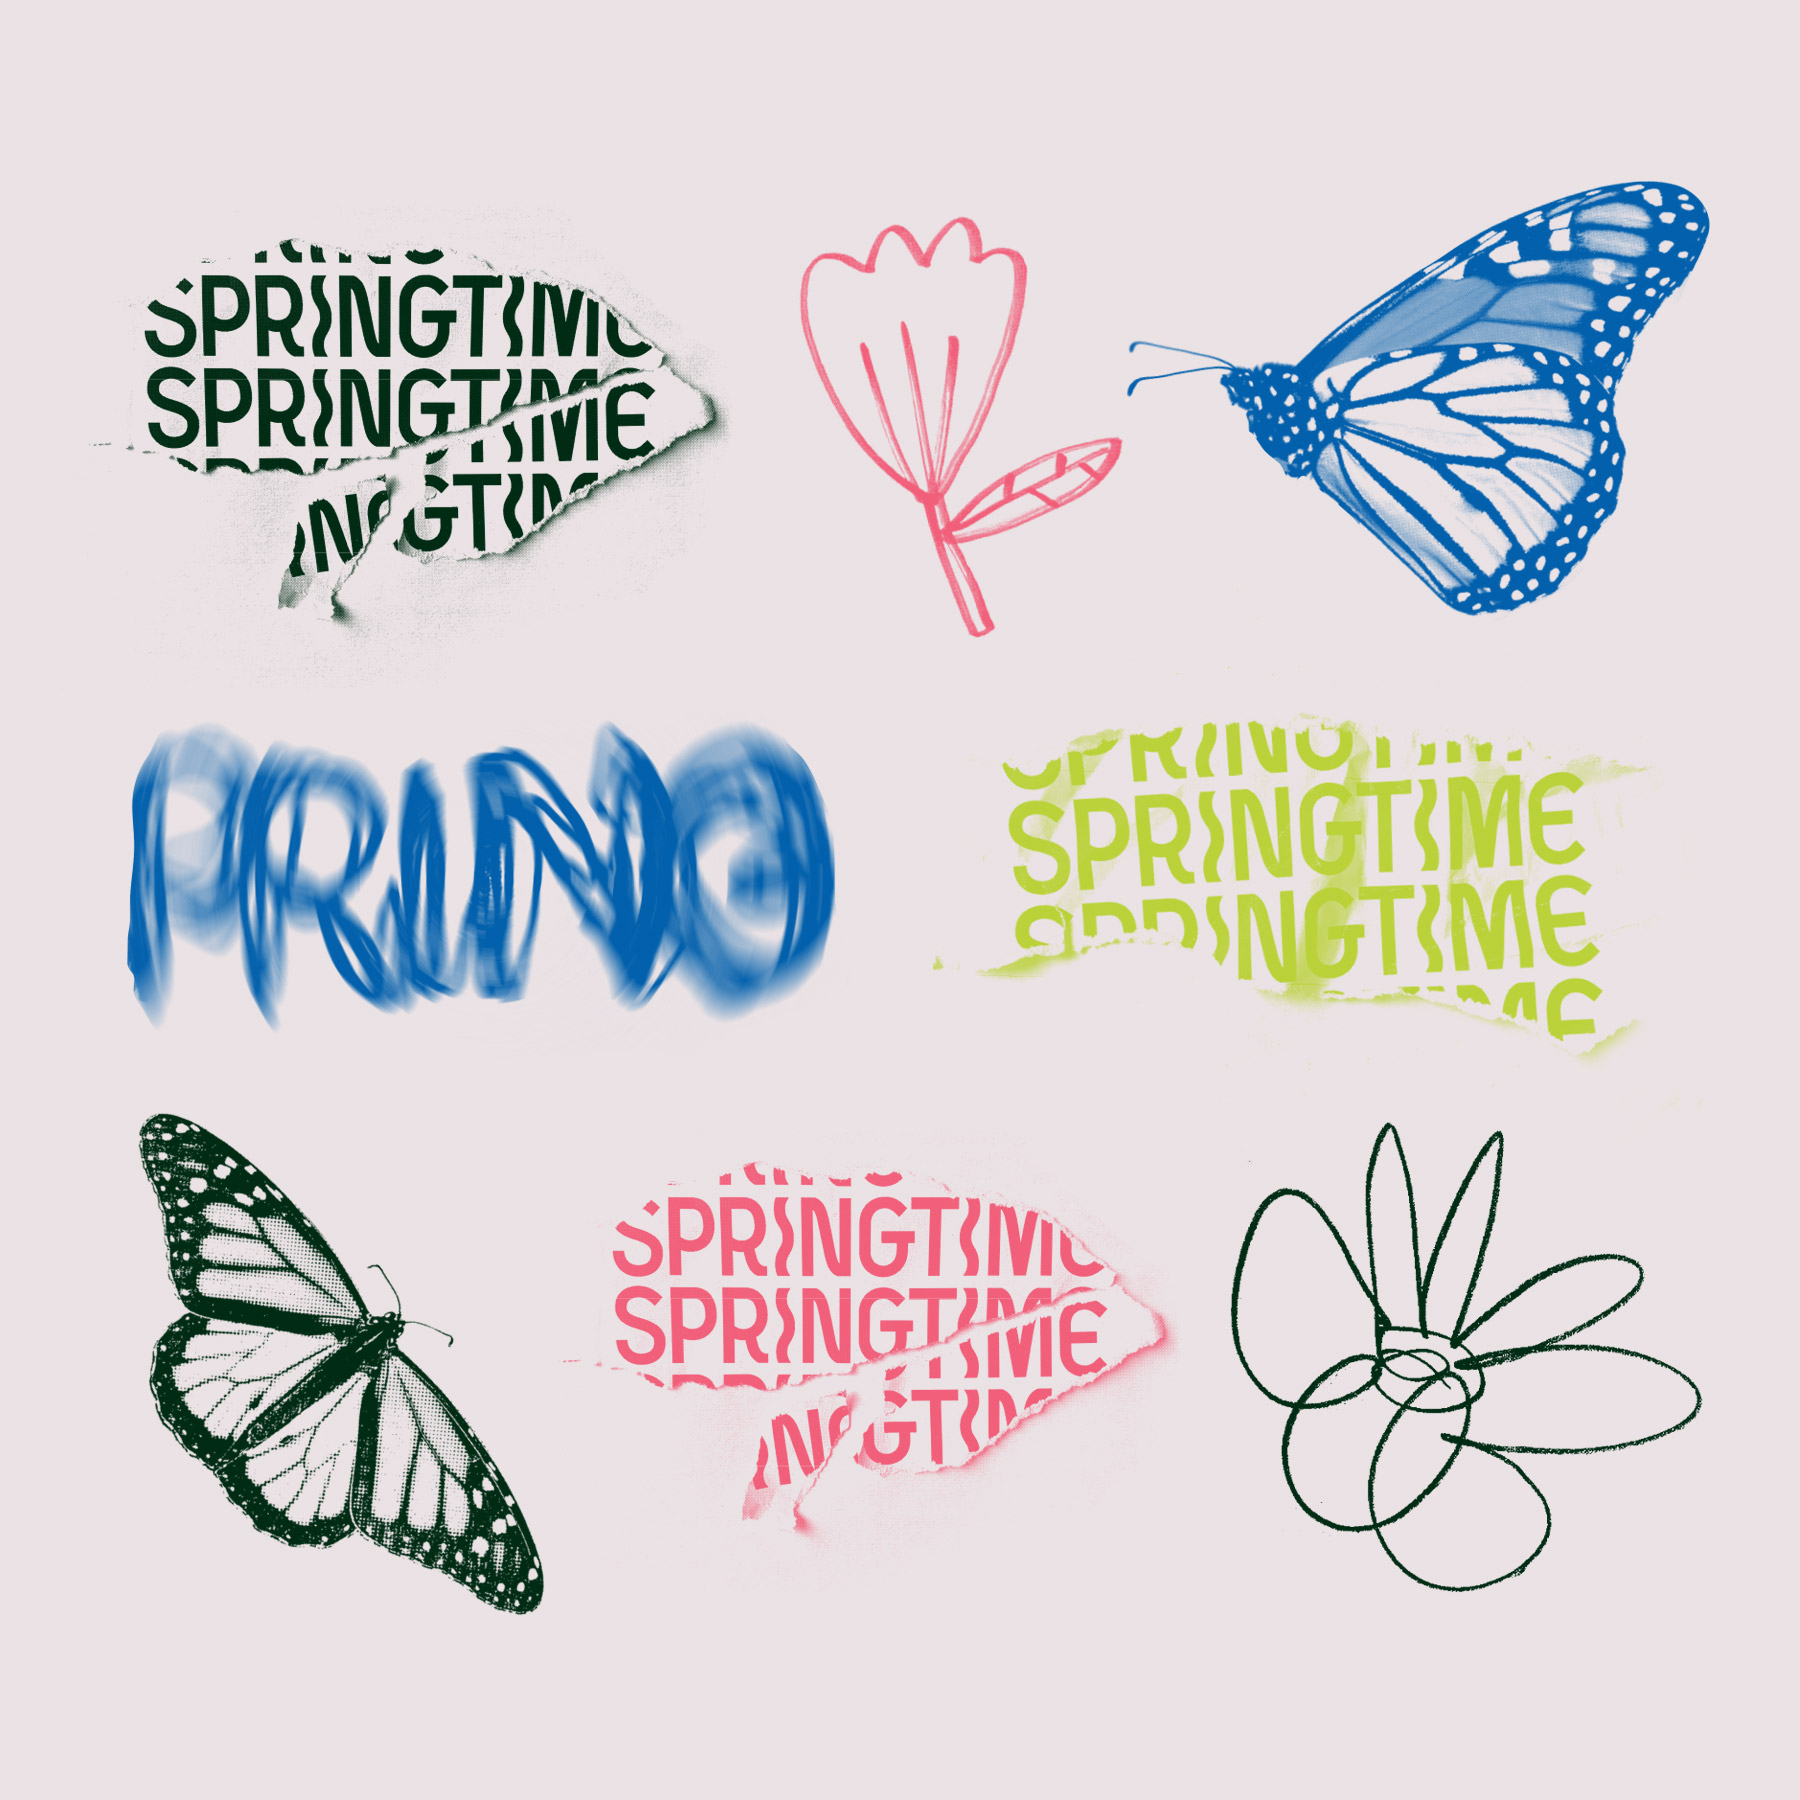 Springtime_Branding_Process4